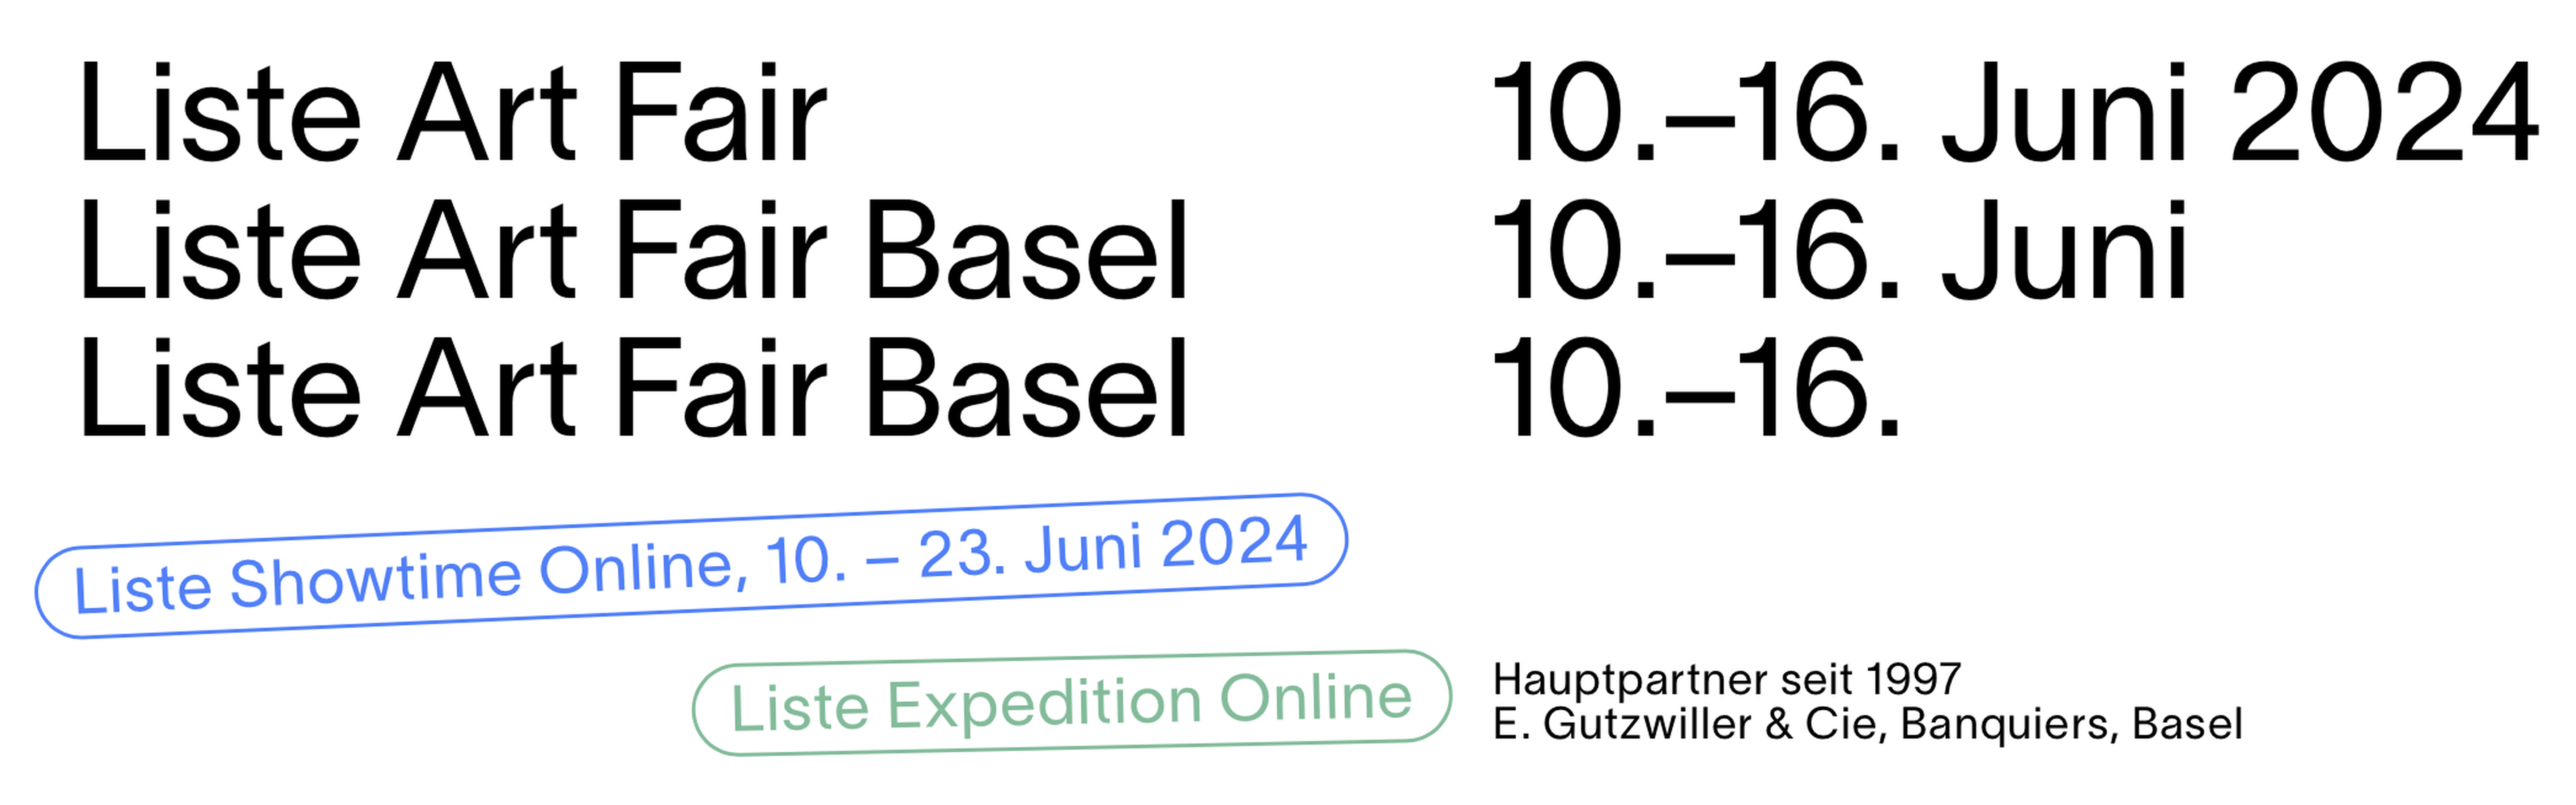 Liste Art Fair Basel 2024 and Liste Showtime